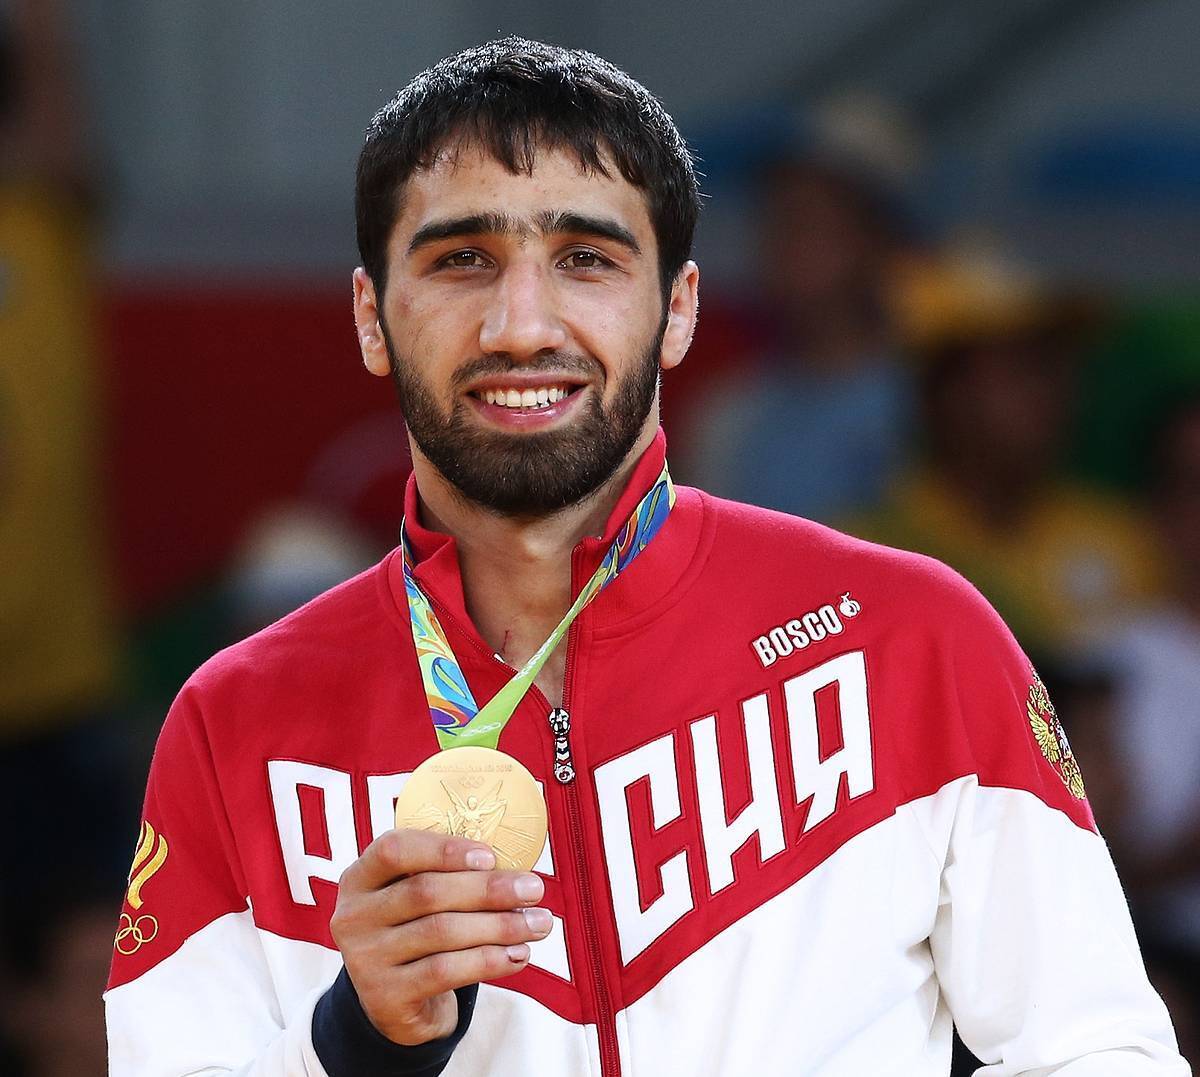 Російського олімпійського чемпіона дискваліфікували за прапор Палестини